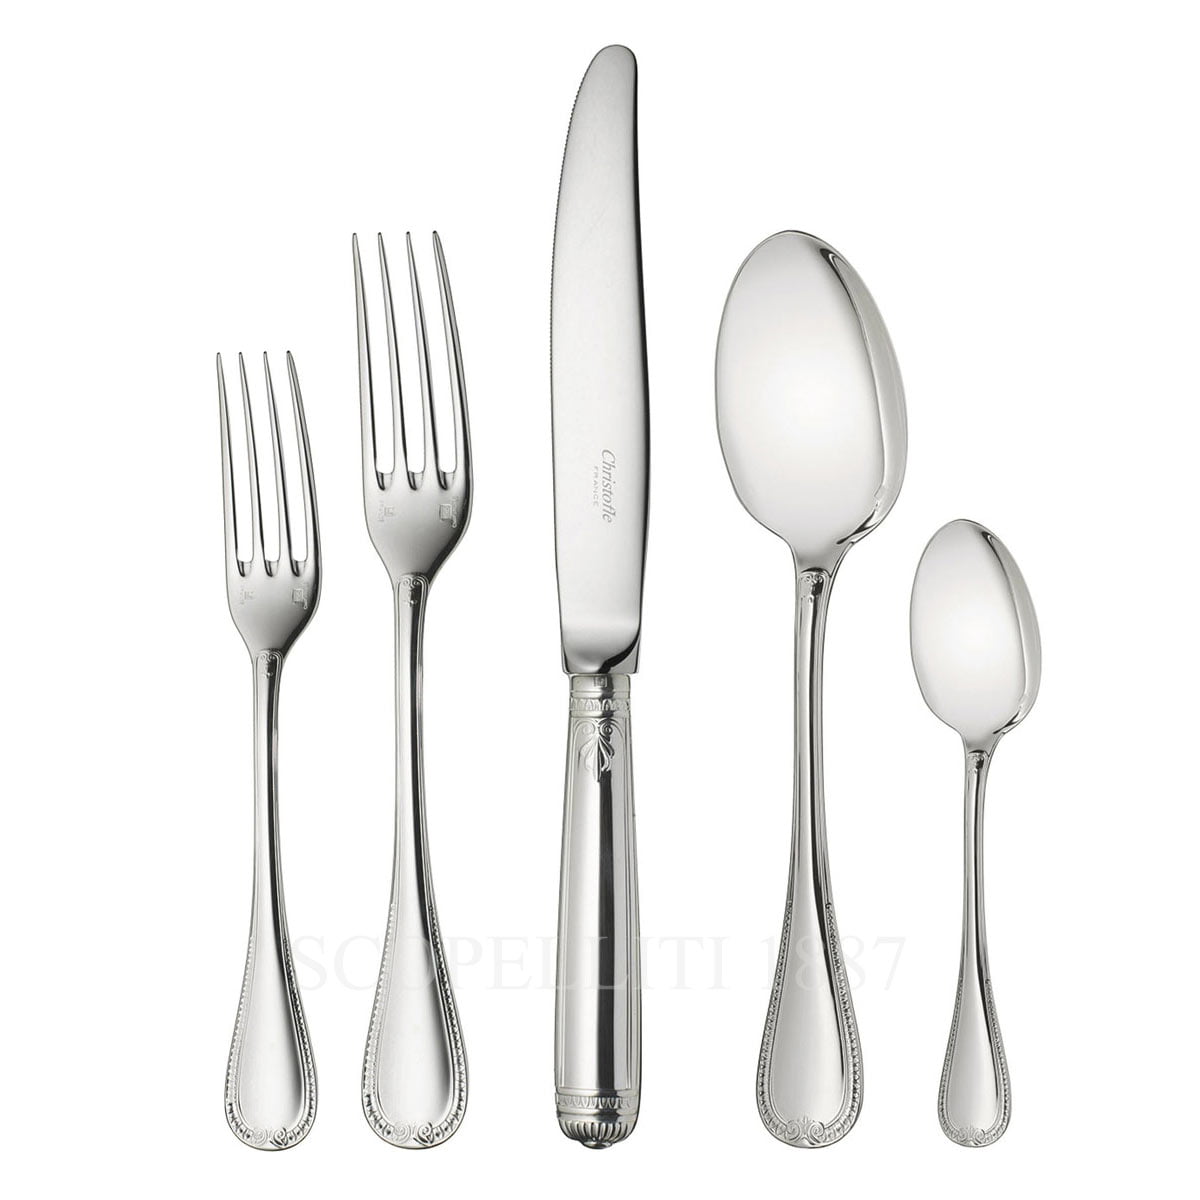 https://scopelliti1887.com/wp-content/uploads/2022/09/christofle-malmaison-110-pcs-silver-plated-cutlery-set.jpeg